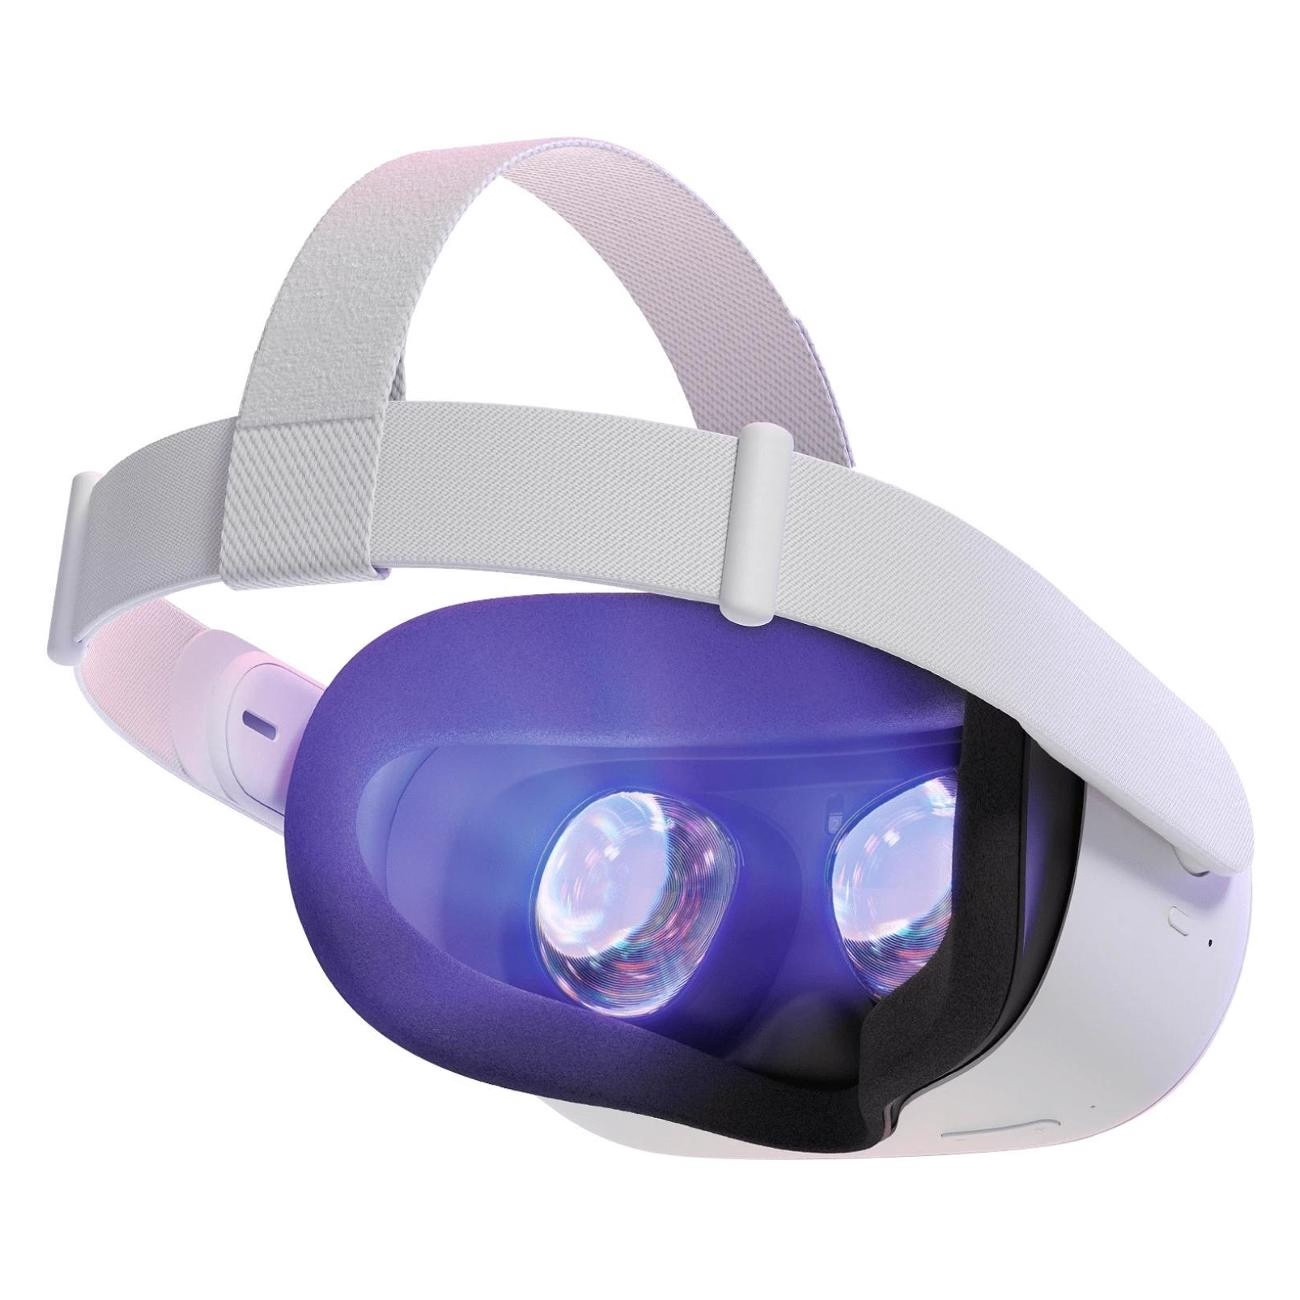 Купить система виртуальной реальности oculus quest 2 белый Системы VR в официальном магазине Apple, Samsung, Xiaomi. iPixel.ru Купить, заказ, кредит, рассрочка, отзывы,  характеристики, цена,  фотографии, в подарок.